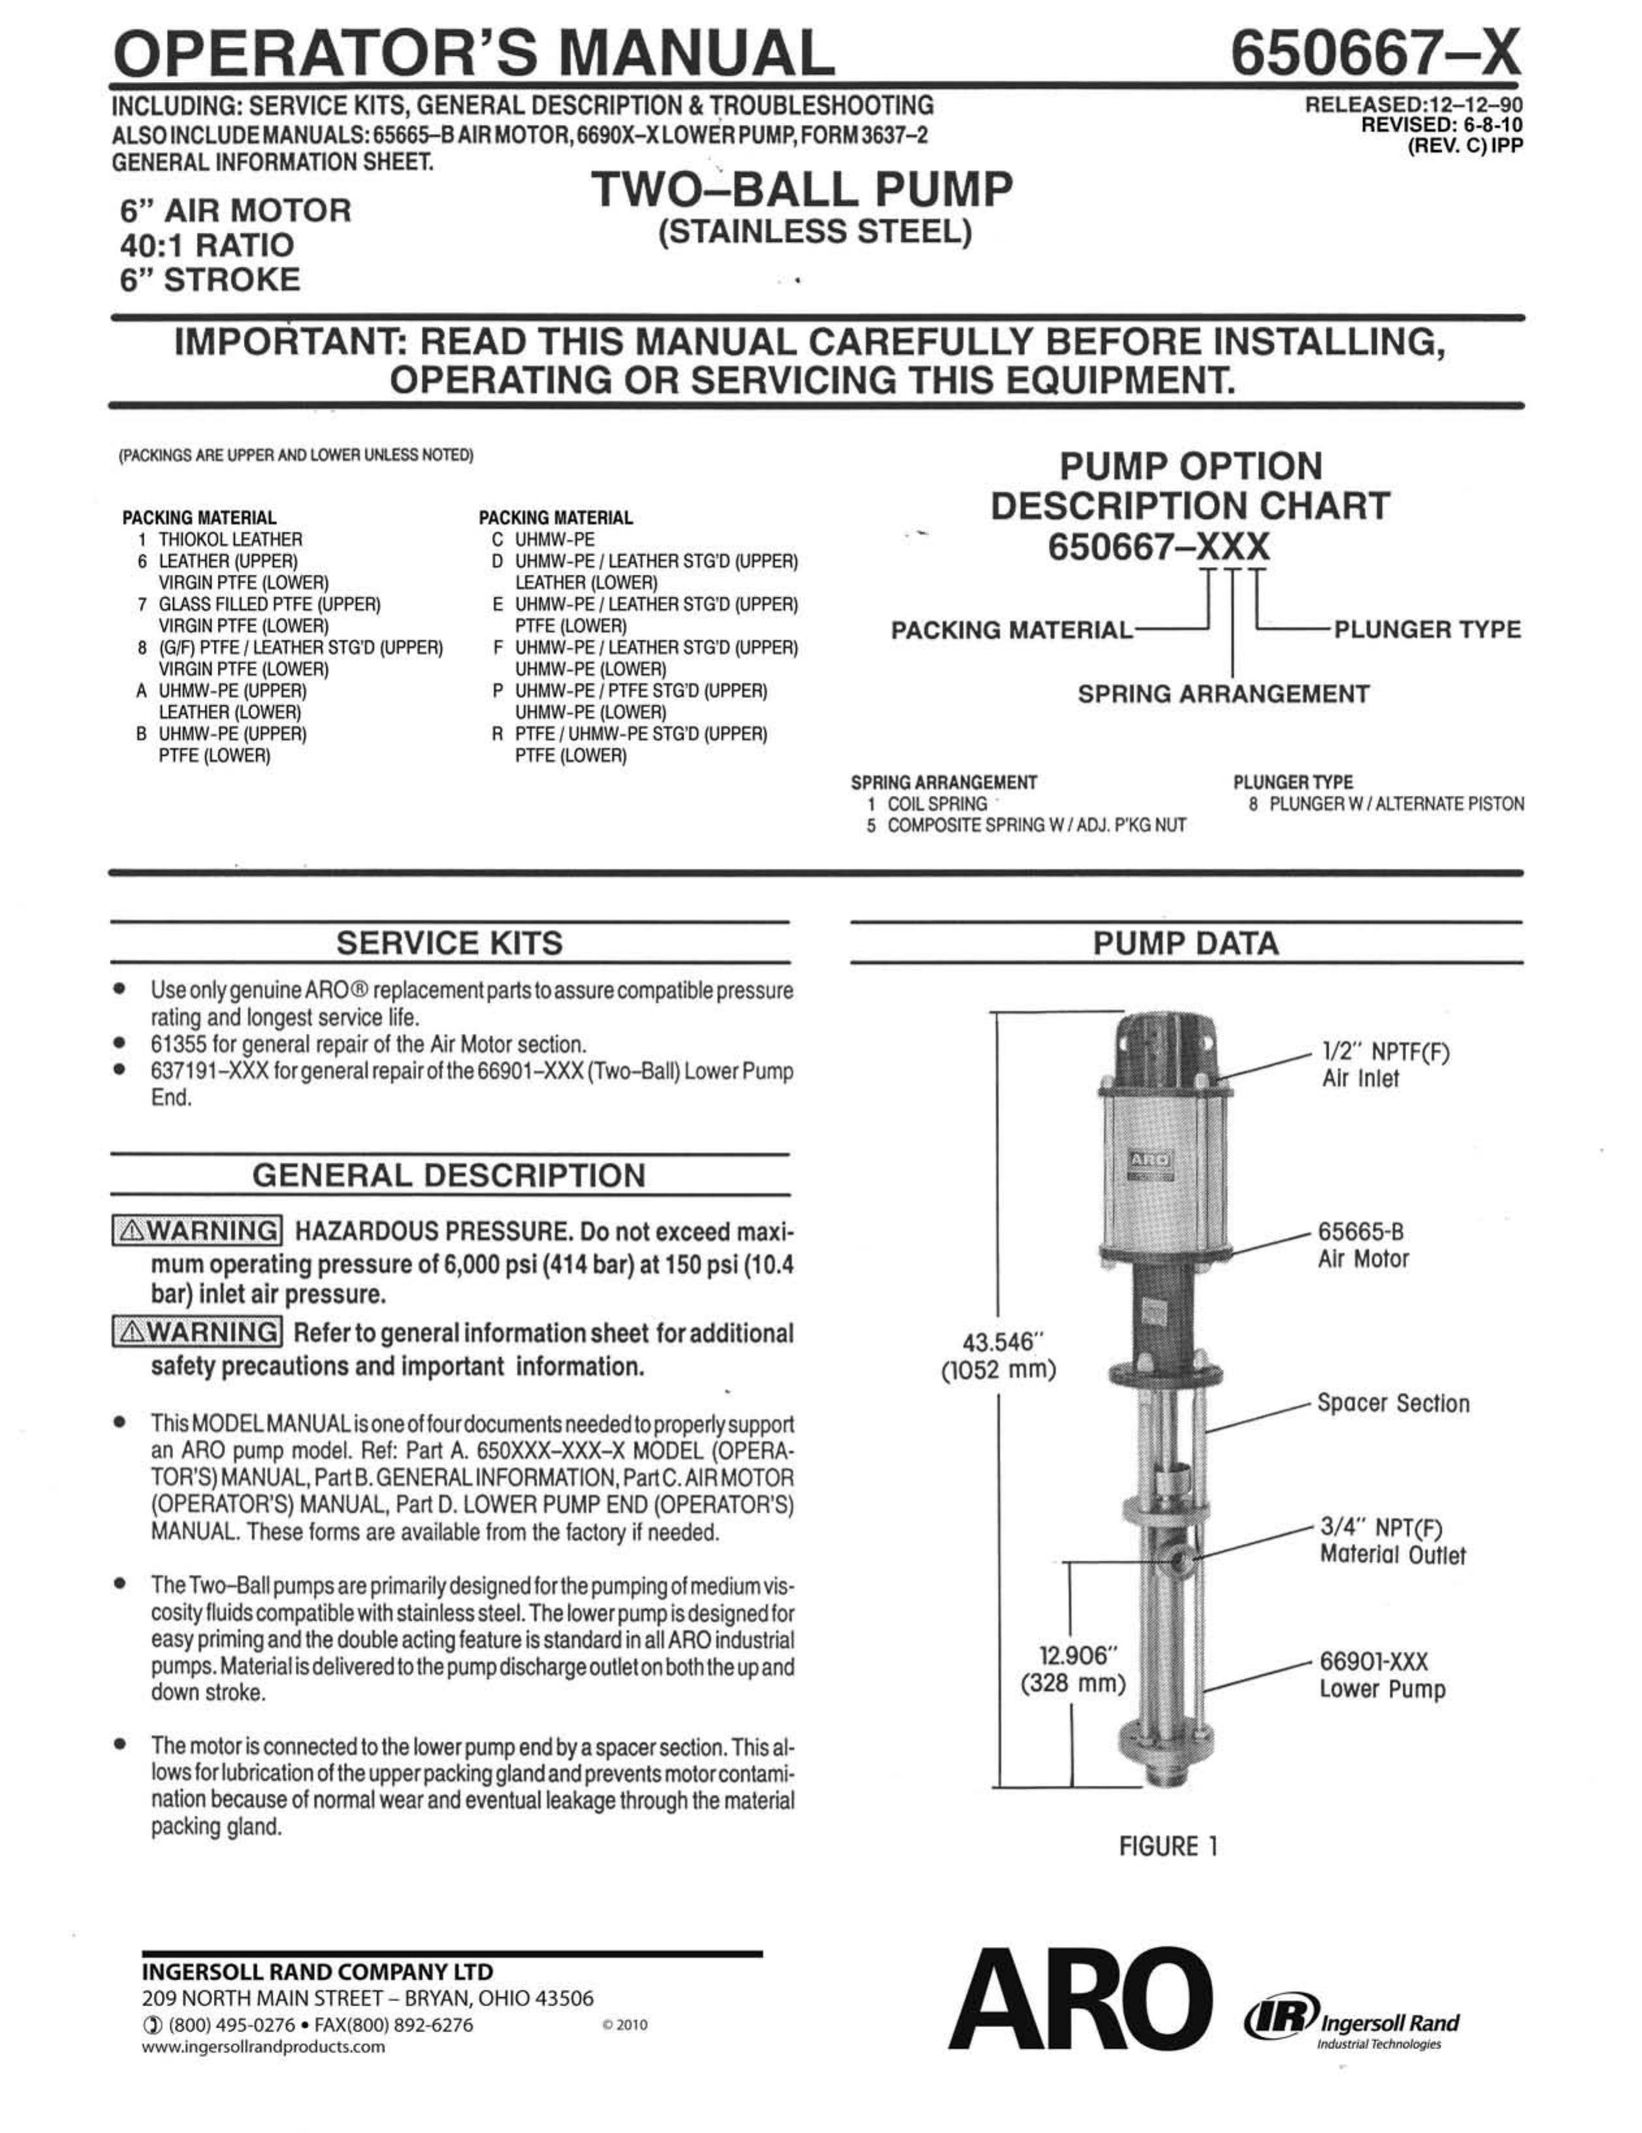 Ingersoll-Rand 650667-X Heat Pump User Manual